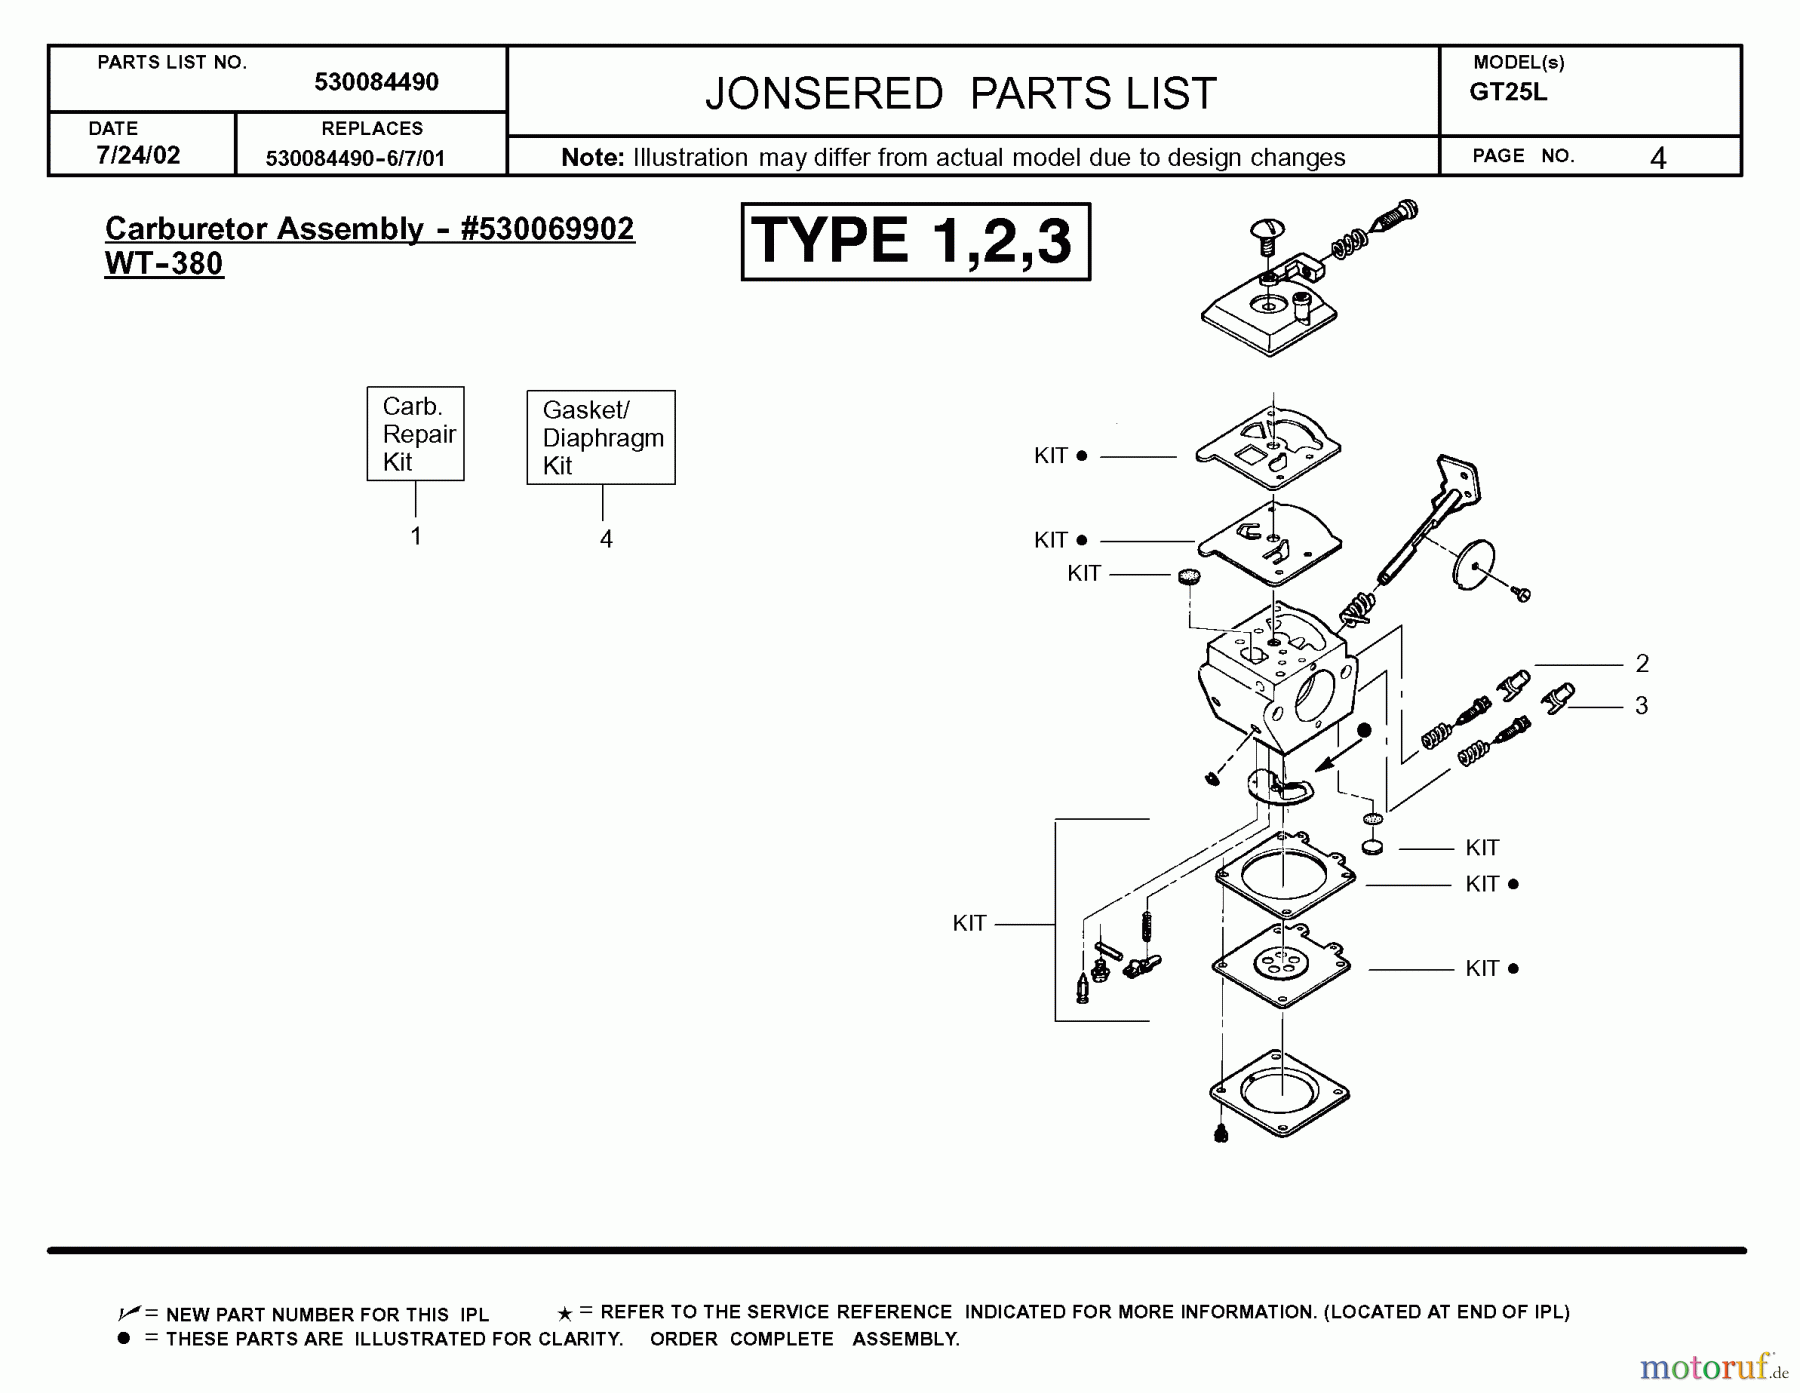  Jonsered Motorsensen, Trimmer GT25 L - Jonsered String/Brush Trimmer (2002-08) CARBURETOR DETAILS